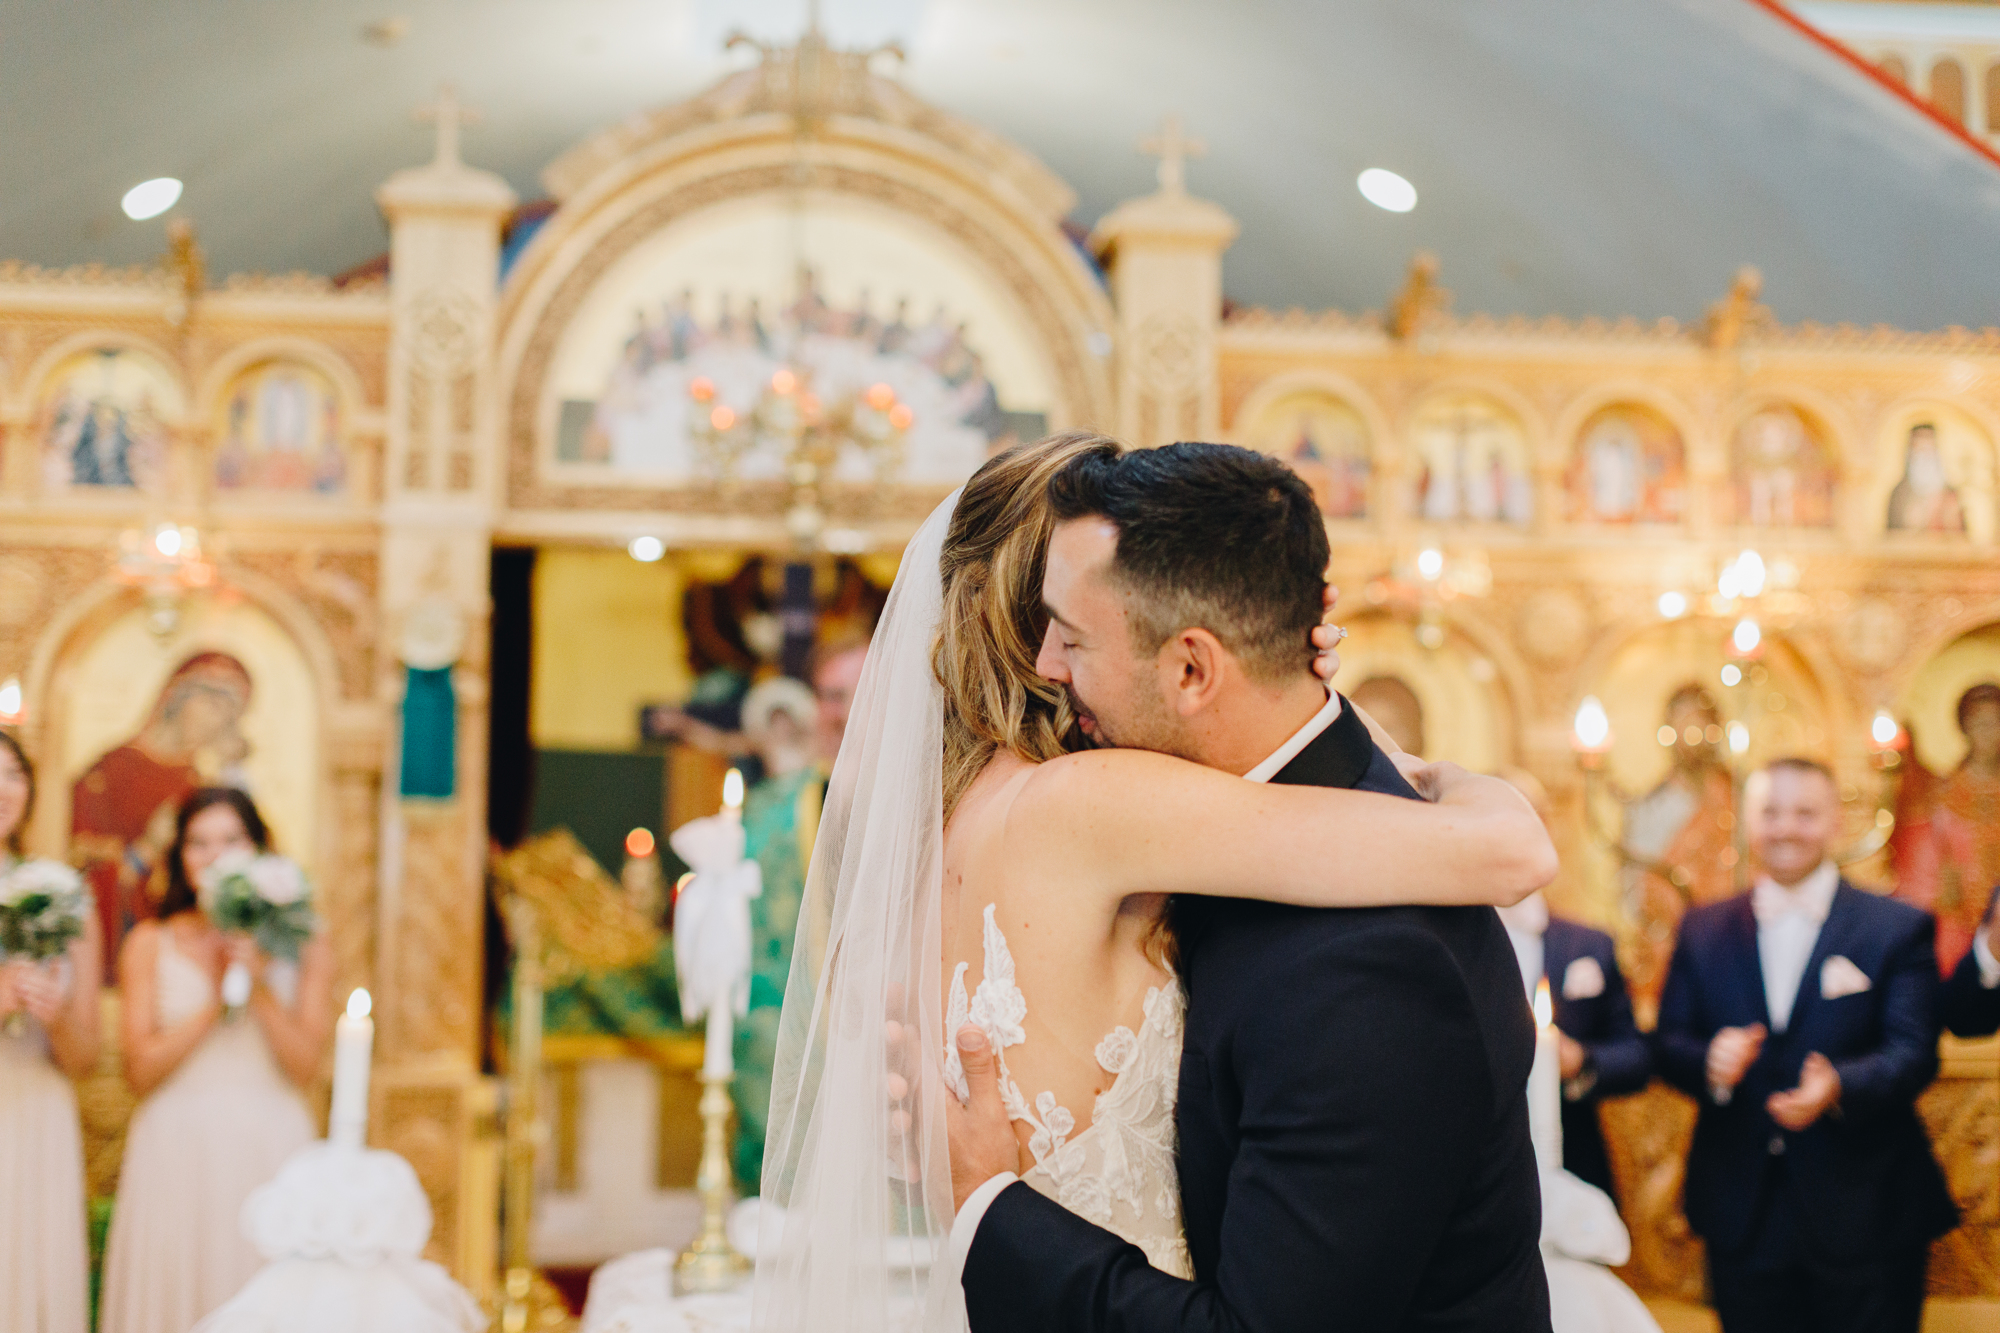 Wedding at St. Markella Greek Orthodox Church in Wantagh, NY